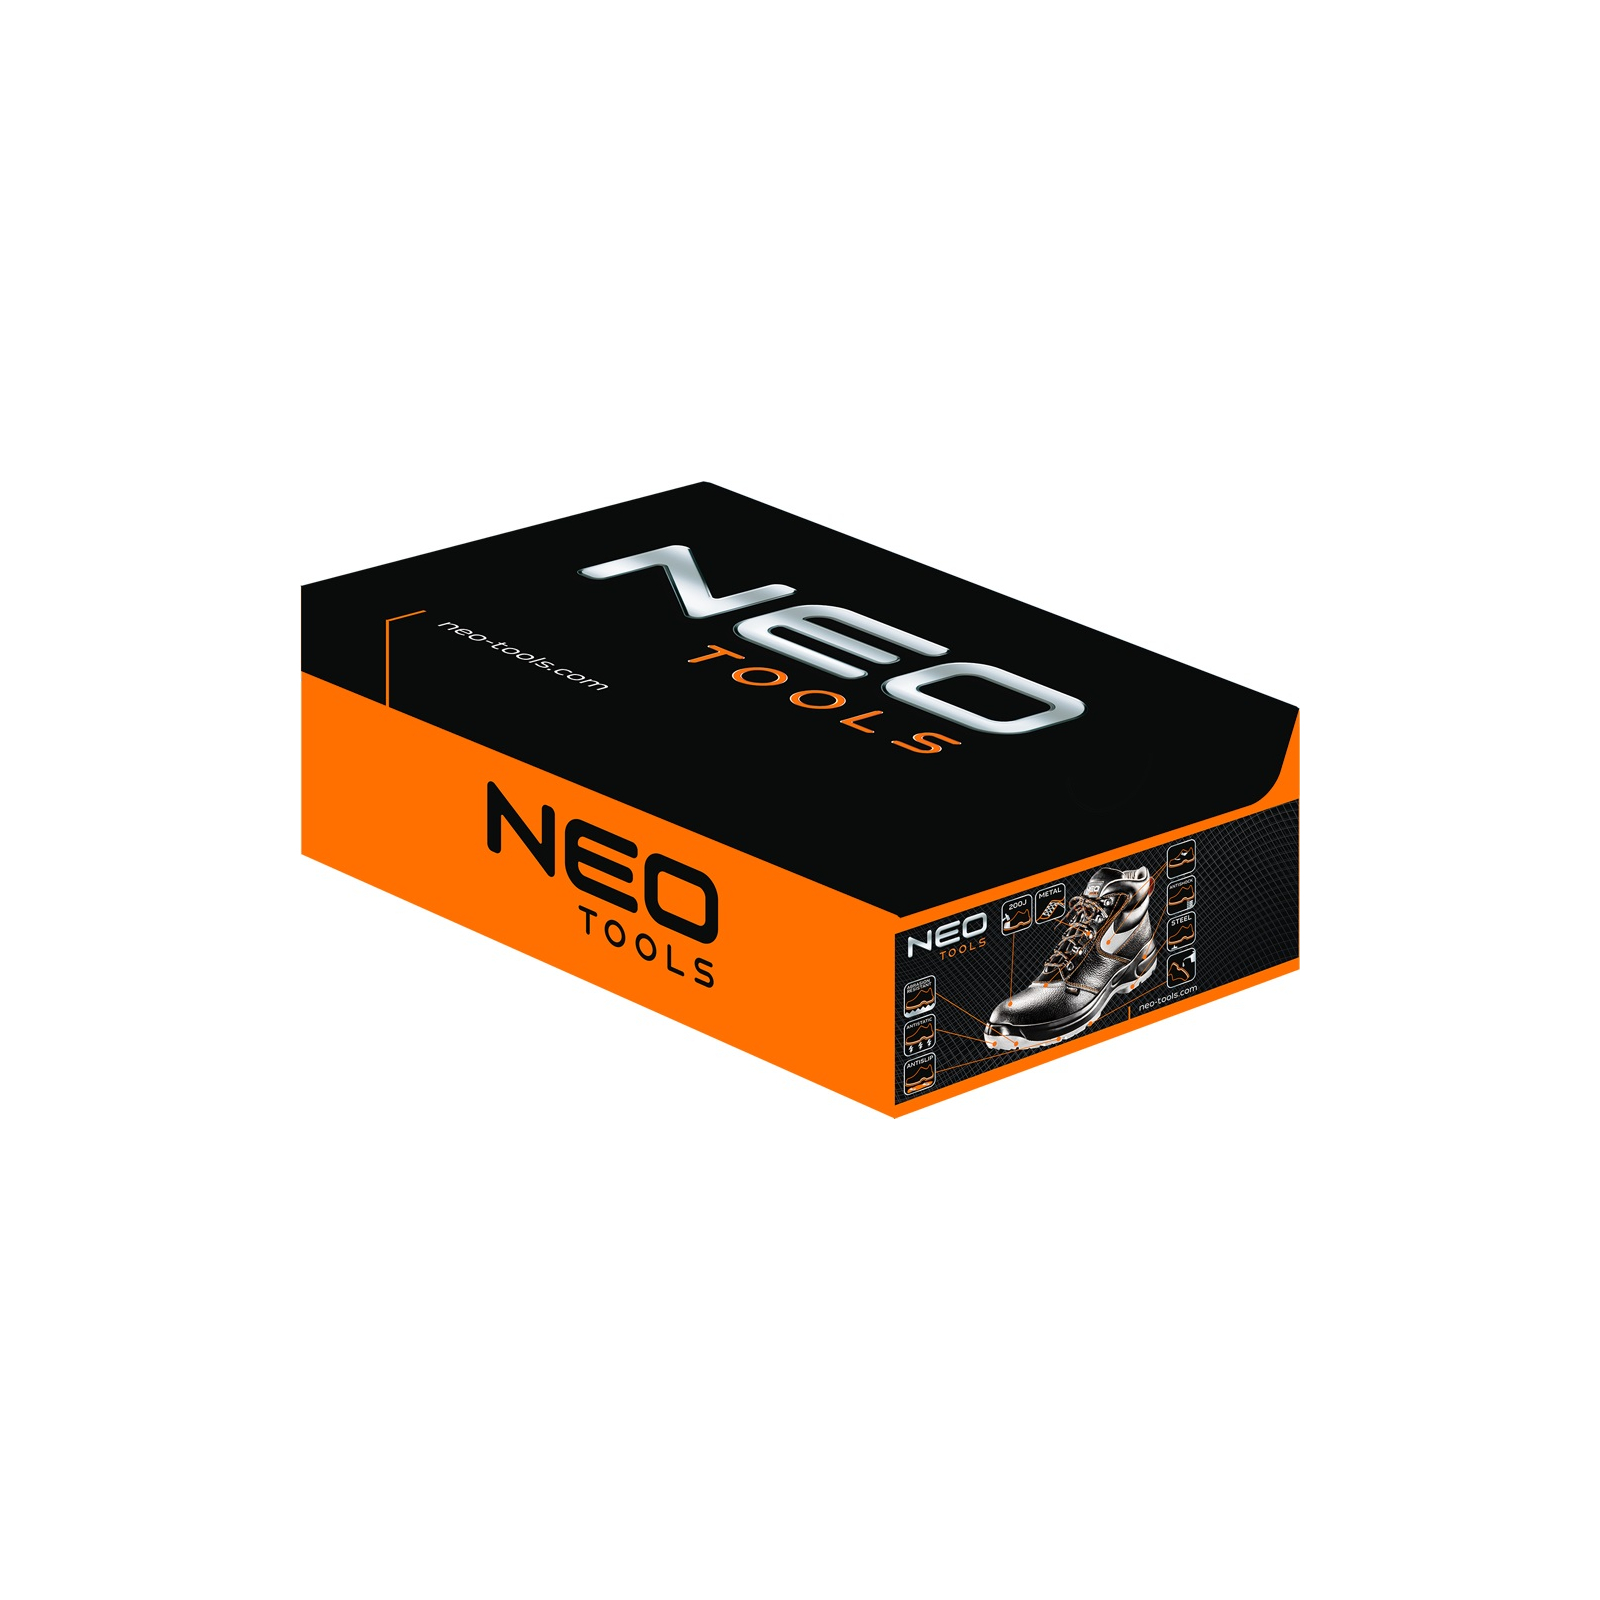 Ботинки рабочие Neo Tools кожа, антипрокол, подносок до 200 Дж, S1P SRA, СЕ, p.45 (82-026) изображение 2